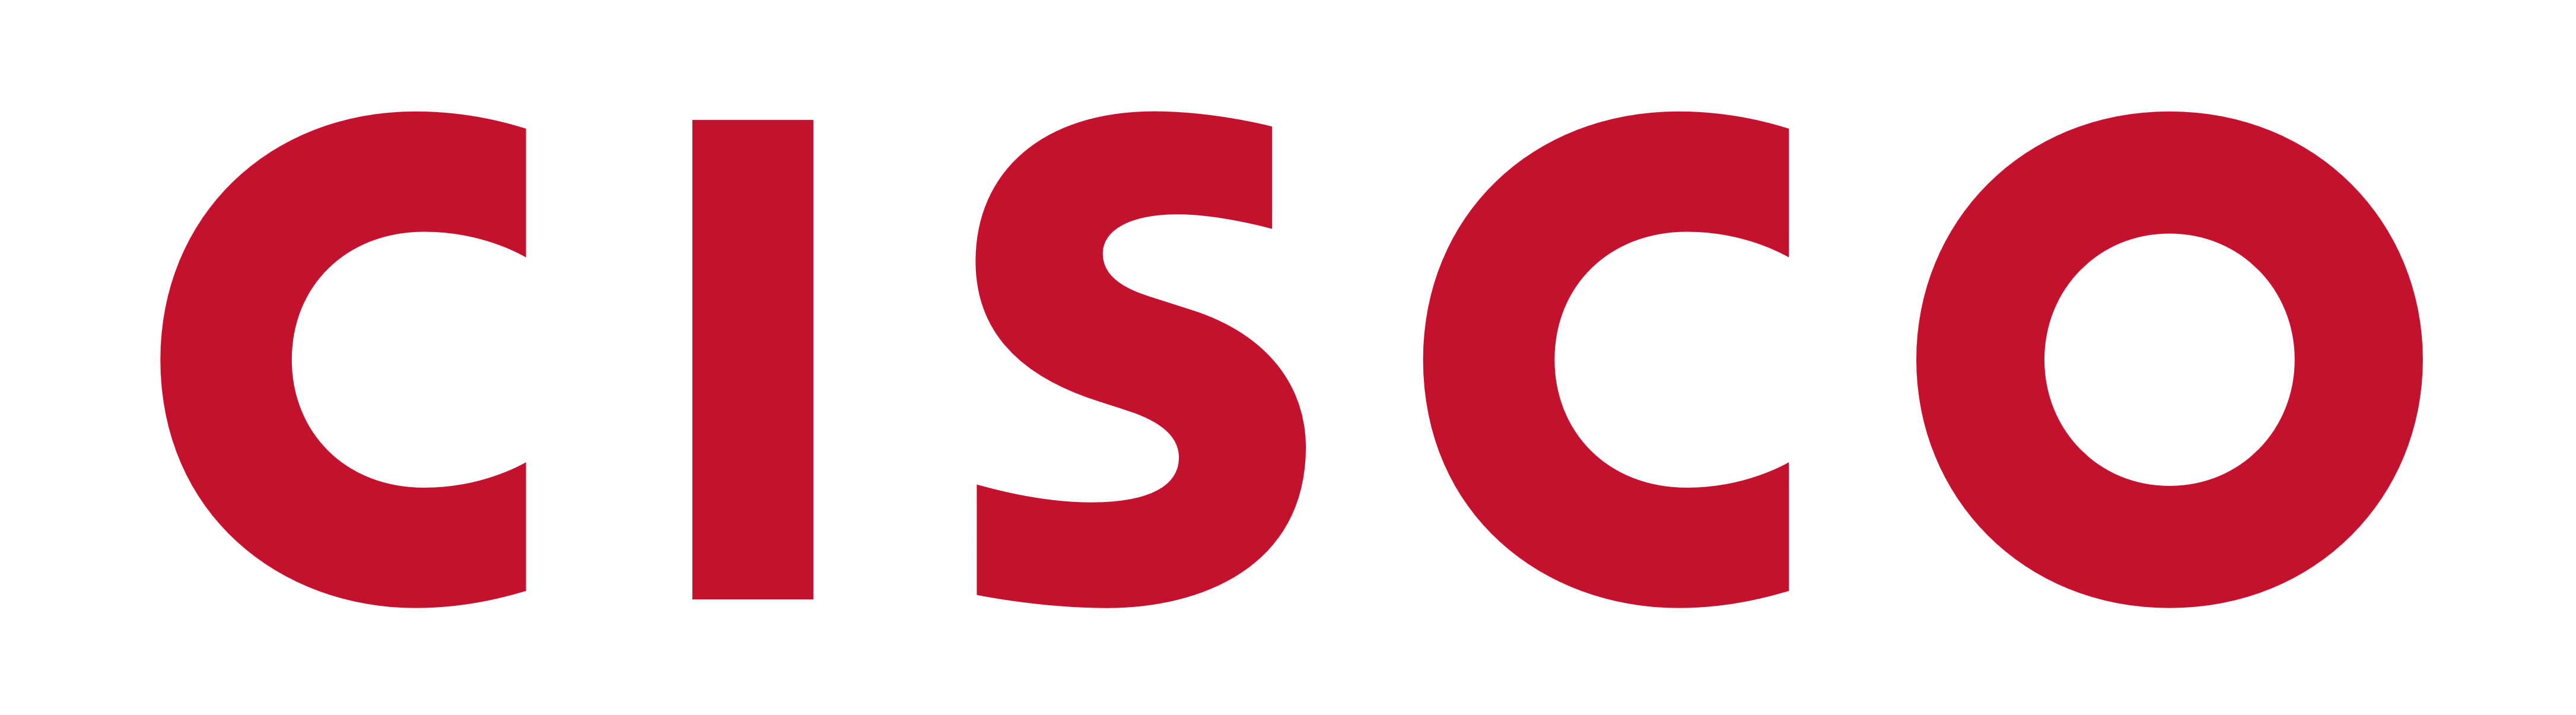 Font-Cisco-Logo